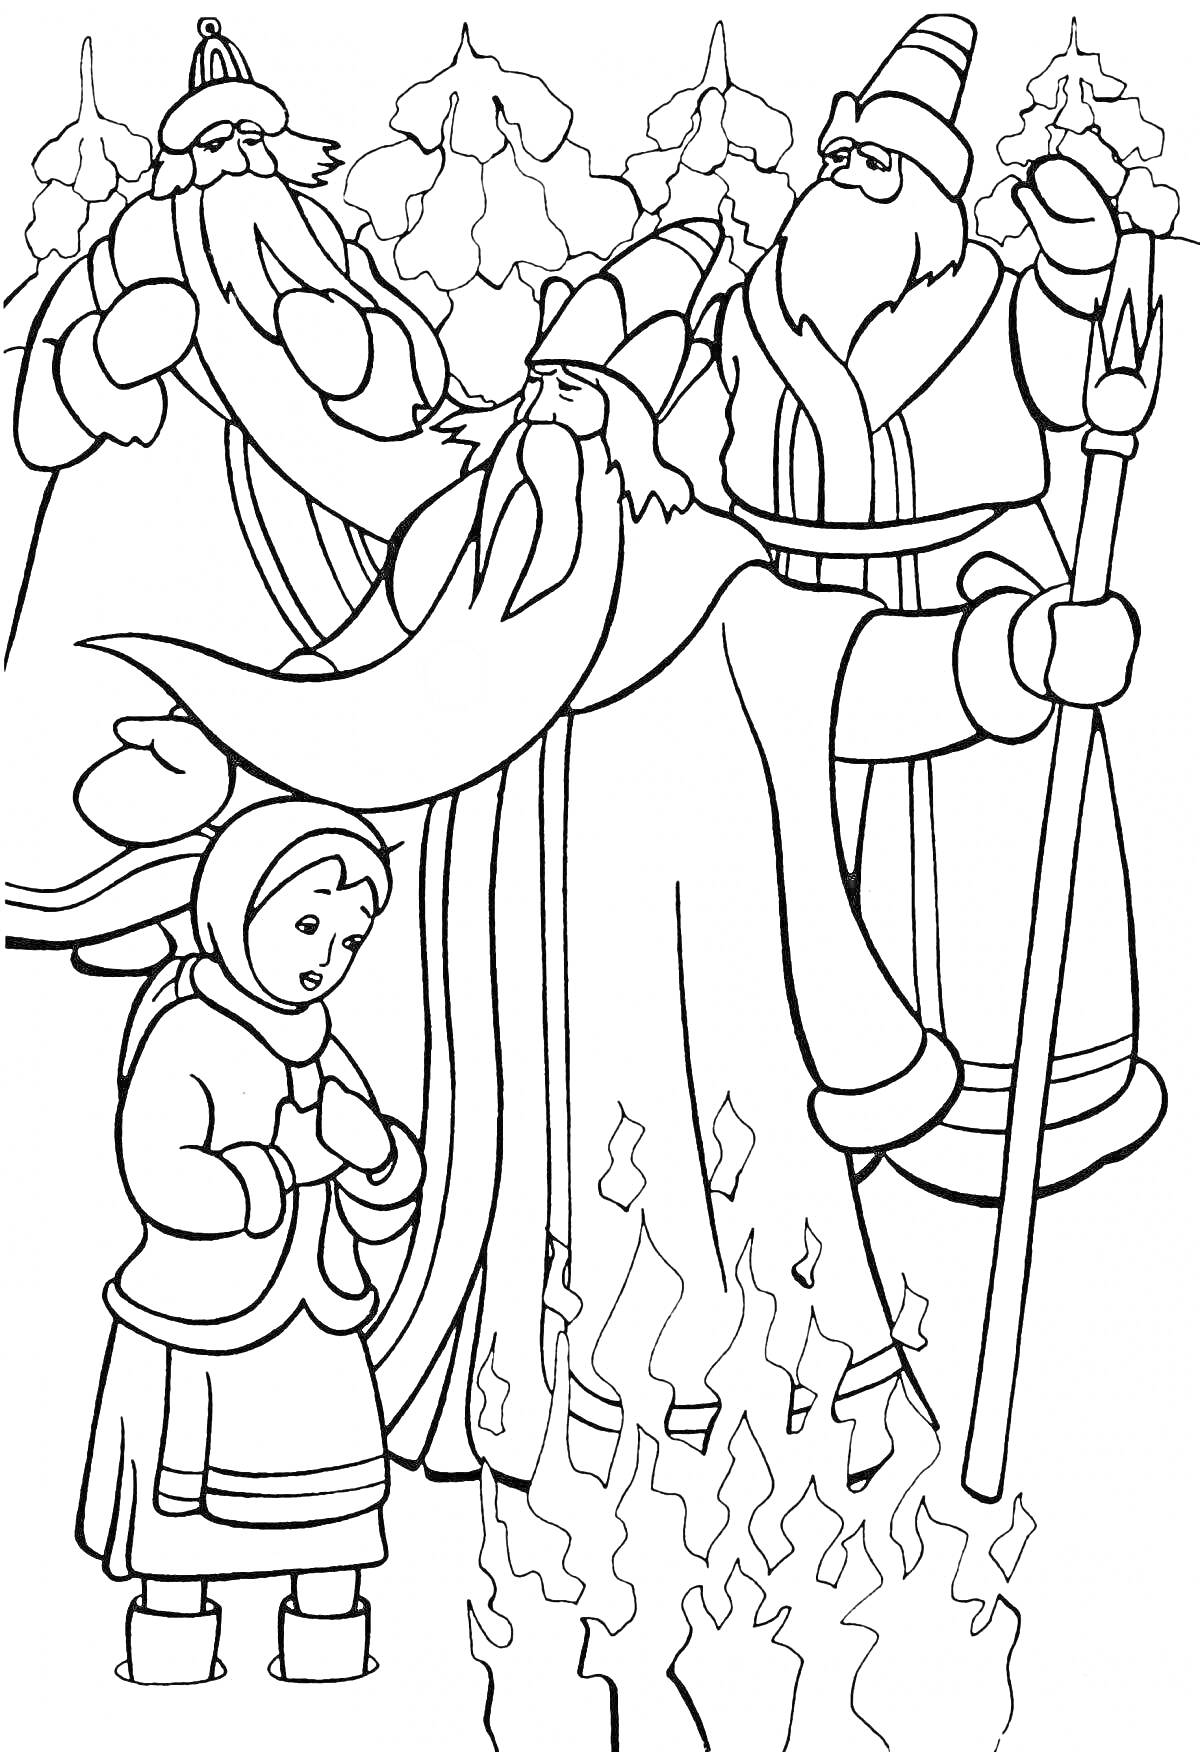 Раскраска Зимняя сцена с лесом, тремя волшебниками в длинных одеждах и посохами, девочкой в тёплой одежде и костром